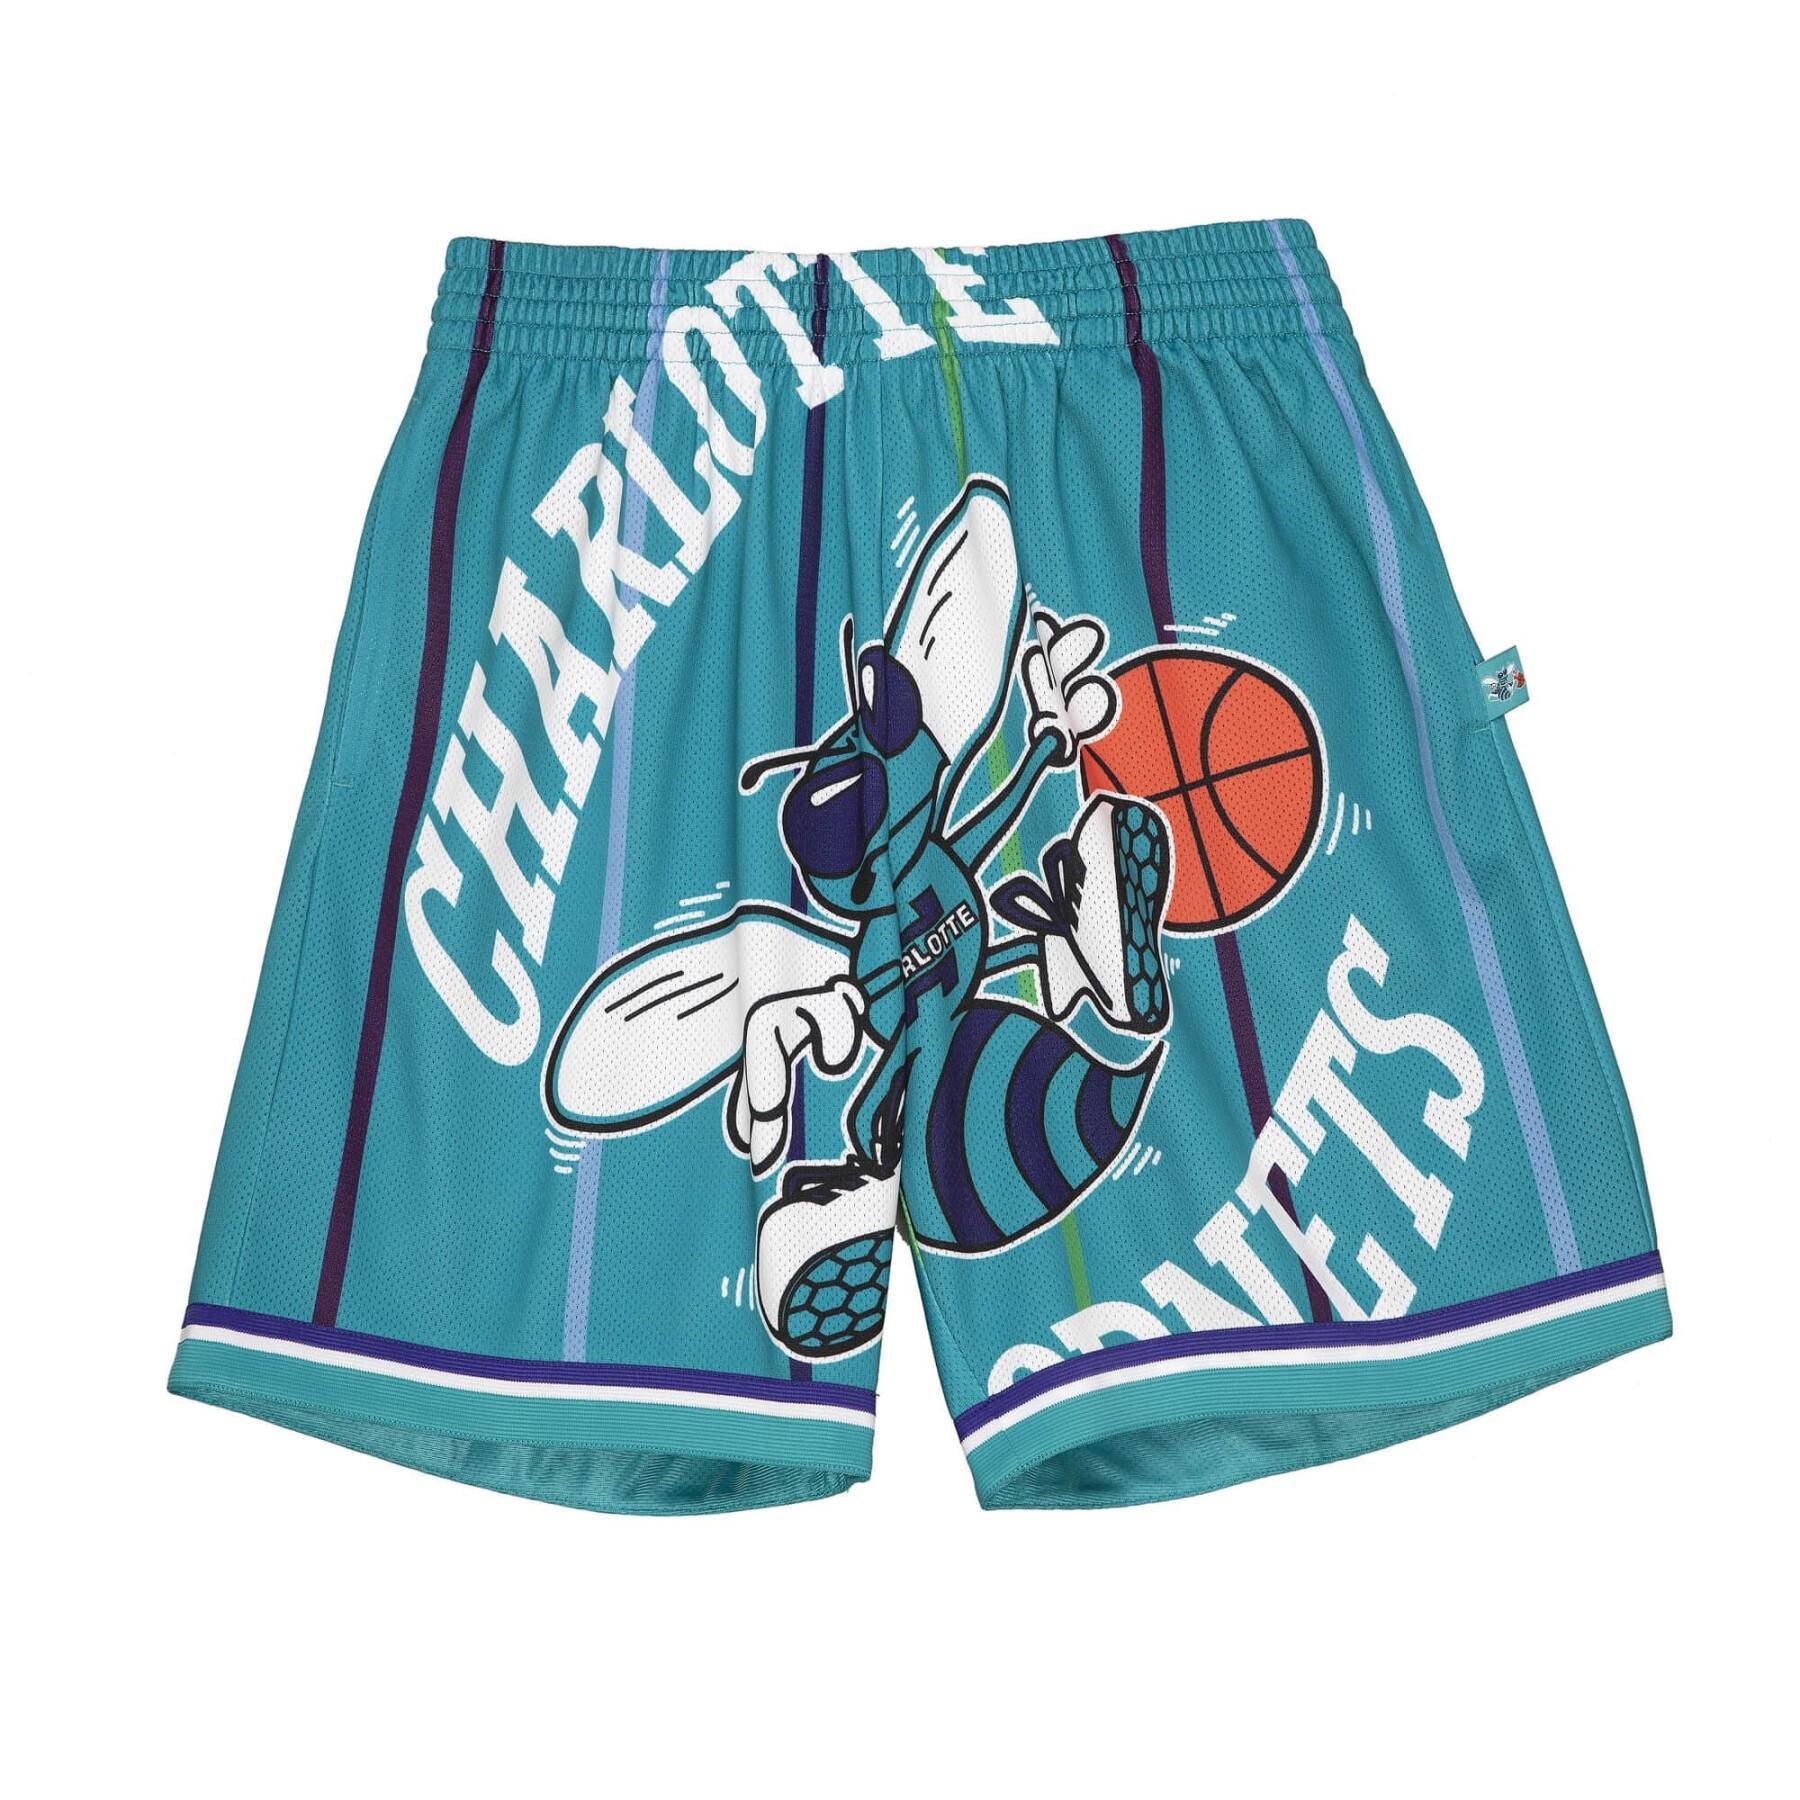 Pantalón corto Charlotte Hornets NBA Blown Out Fashion